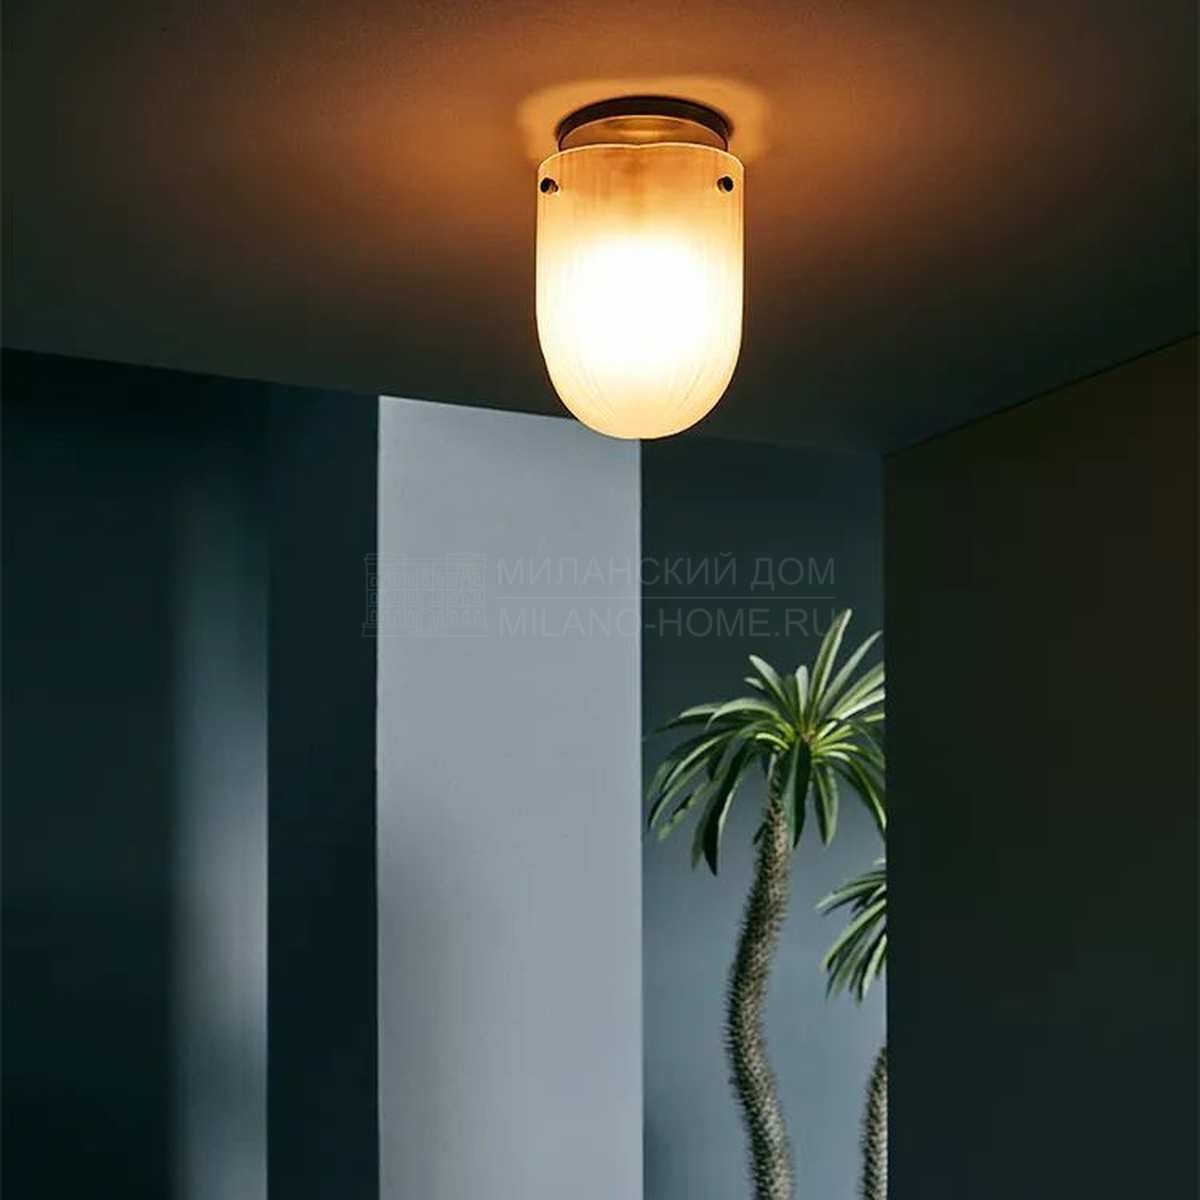 Потолочный светильник Seine ceiling lamp из Дании фабрики GUBI